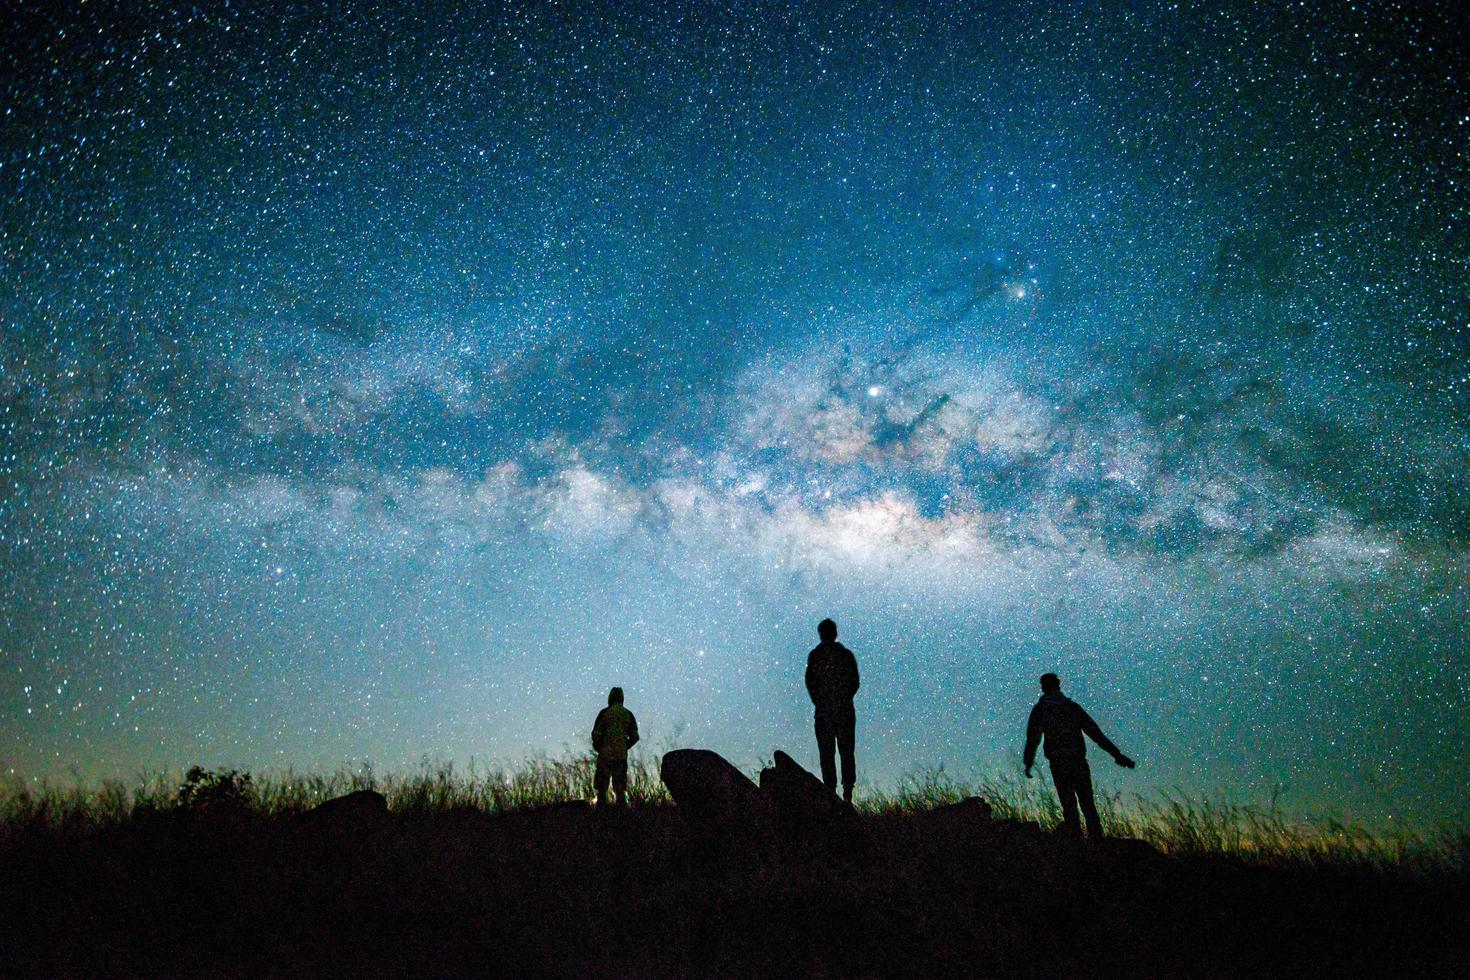 céu noturno azul escuro com fundo de espaço da Via Láctea estrela e silhueta de um homem feliz em pé foto